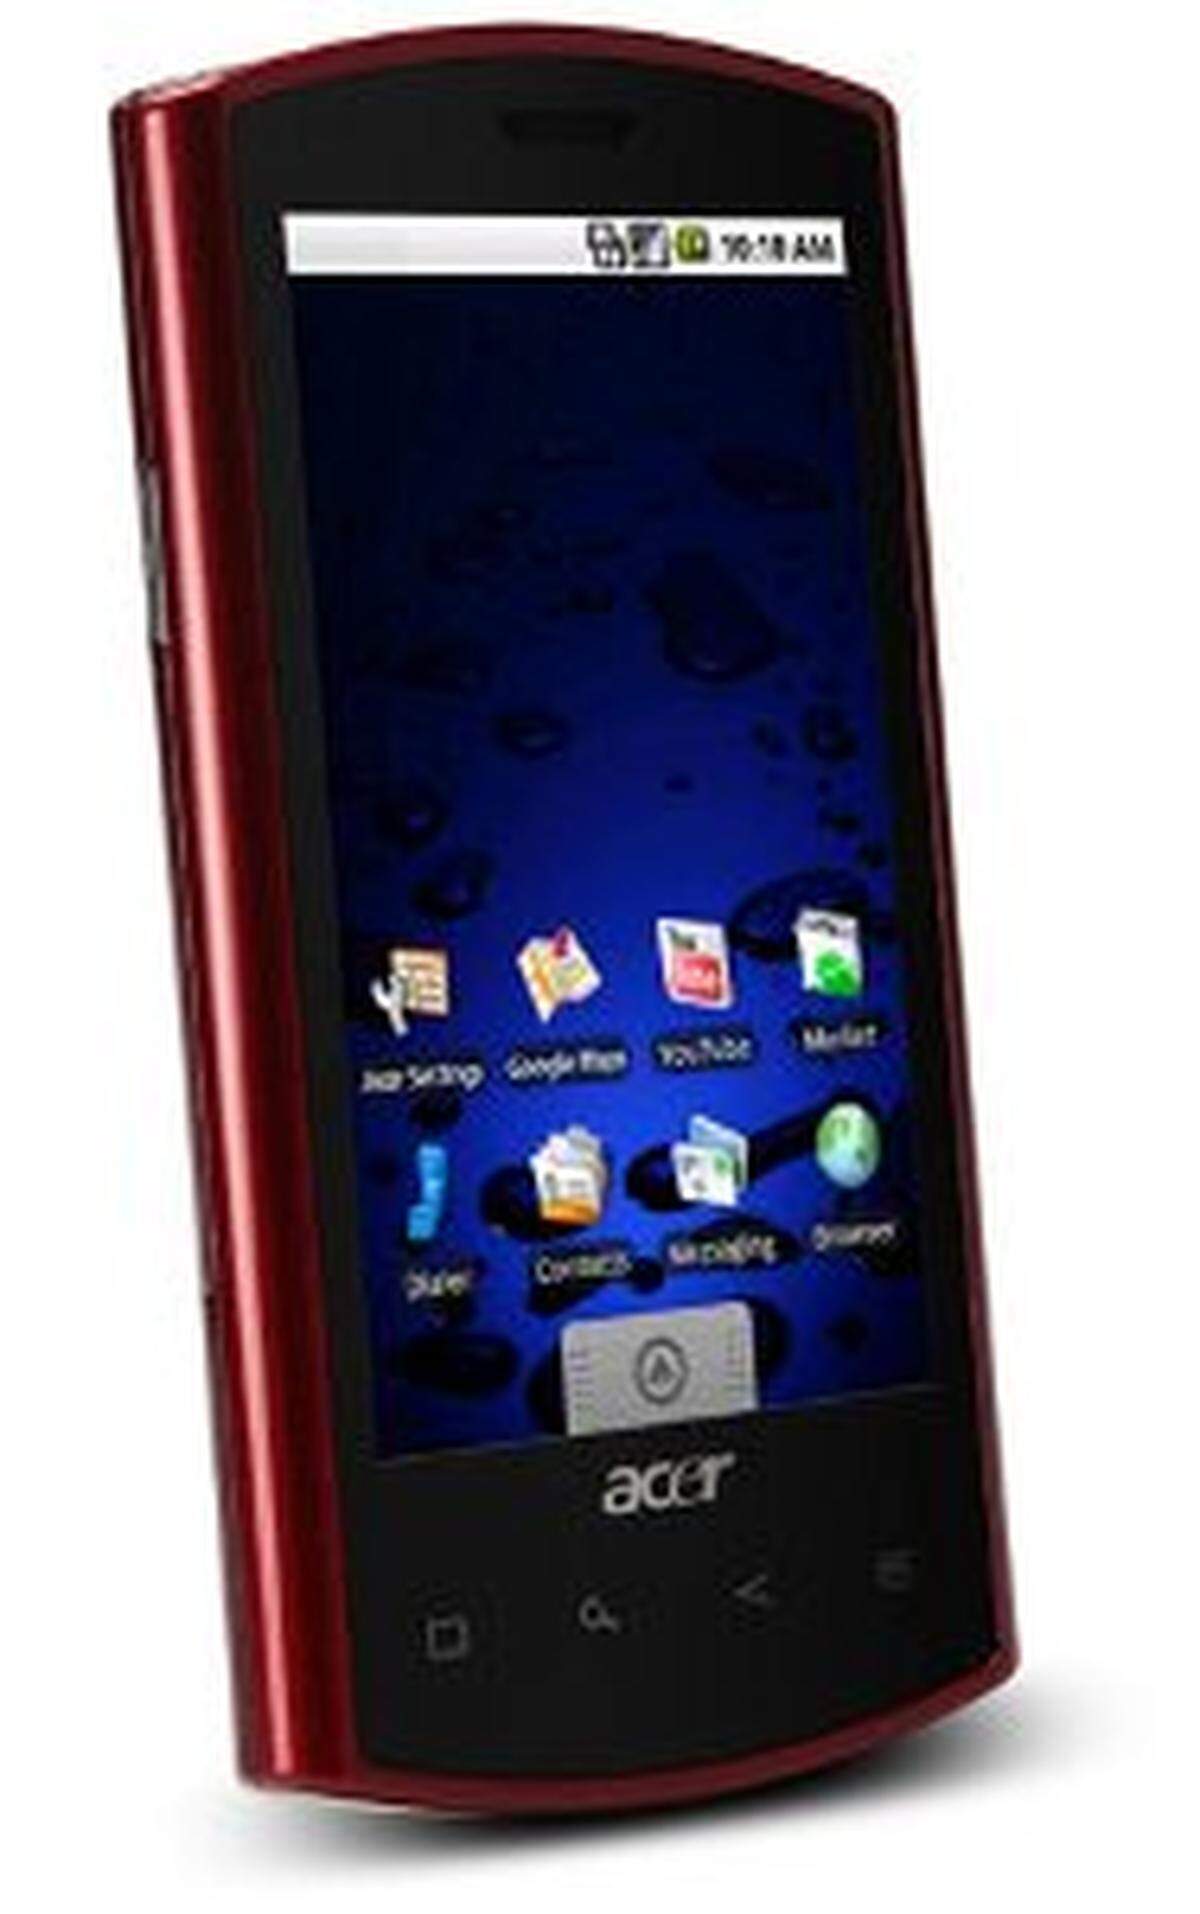 Acer hat sein neues Smartphone Liquid e vorgestellt. Das Gerät bietet vergleichsweise übliche Kost mit einem 3,5-Zoll-Touchscreen, einer 5-Megapixel-Kamera und Verbindungsmöglichkeiten zu WLAN, UMTS und GPS. Als Betriebssystem kommt Android 2.1 zum Einsatz. Etwas enttäuschend: Der Prozessor schafft zwar eine Taktfrequenz von 1 GHz, wurde aber auf 768 MHz heruntergetaktet.